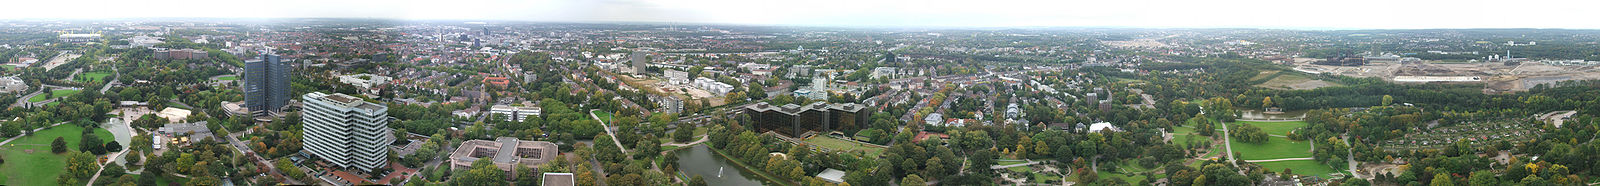 Panoramabild von Dortmund vom Florianturm aus gesehen